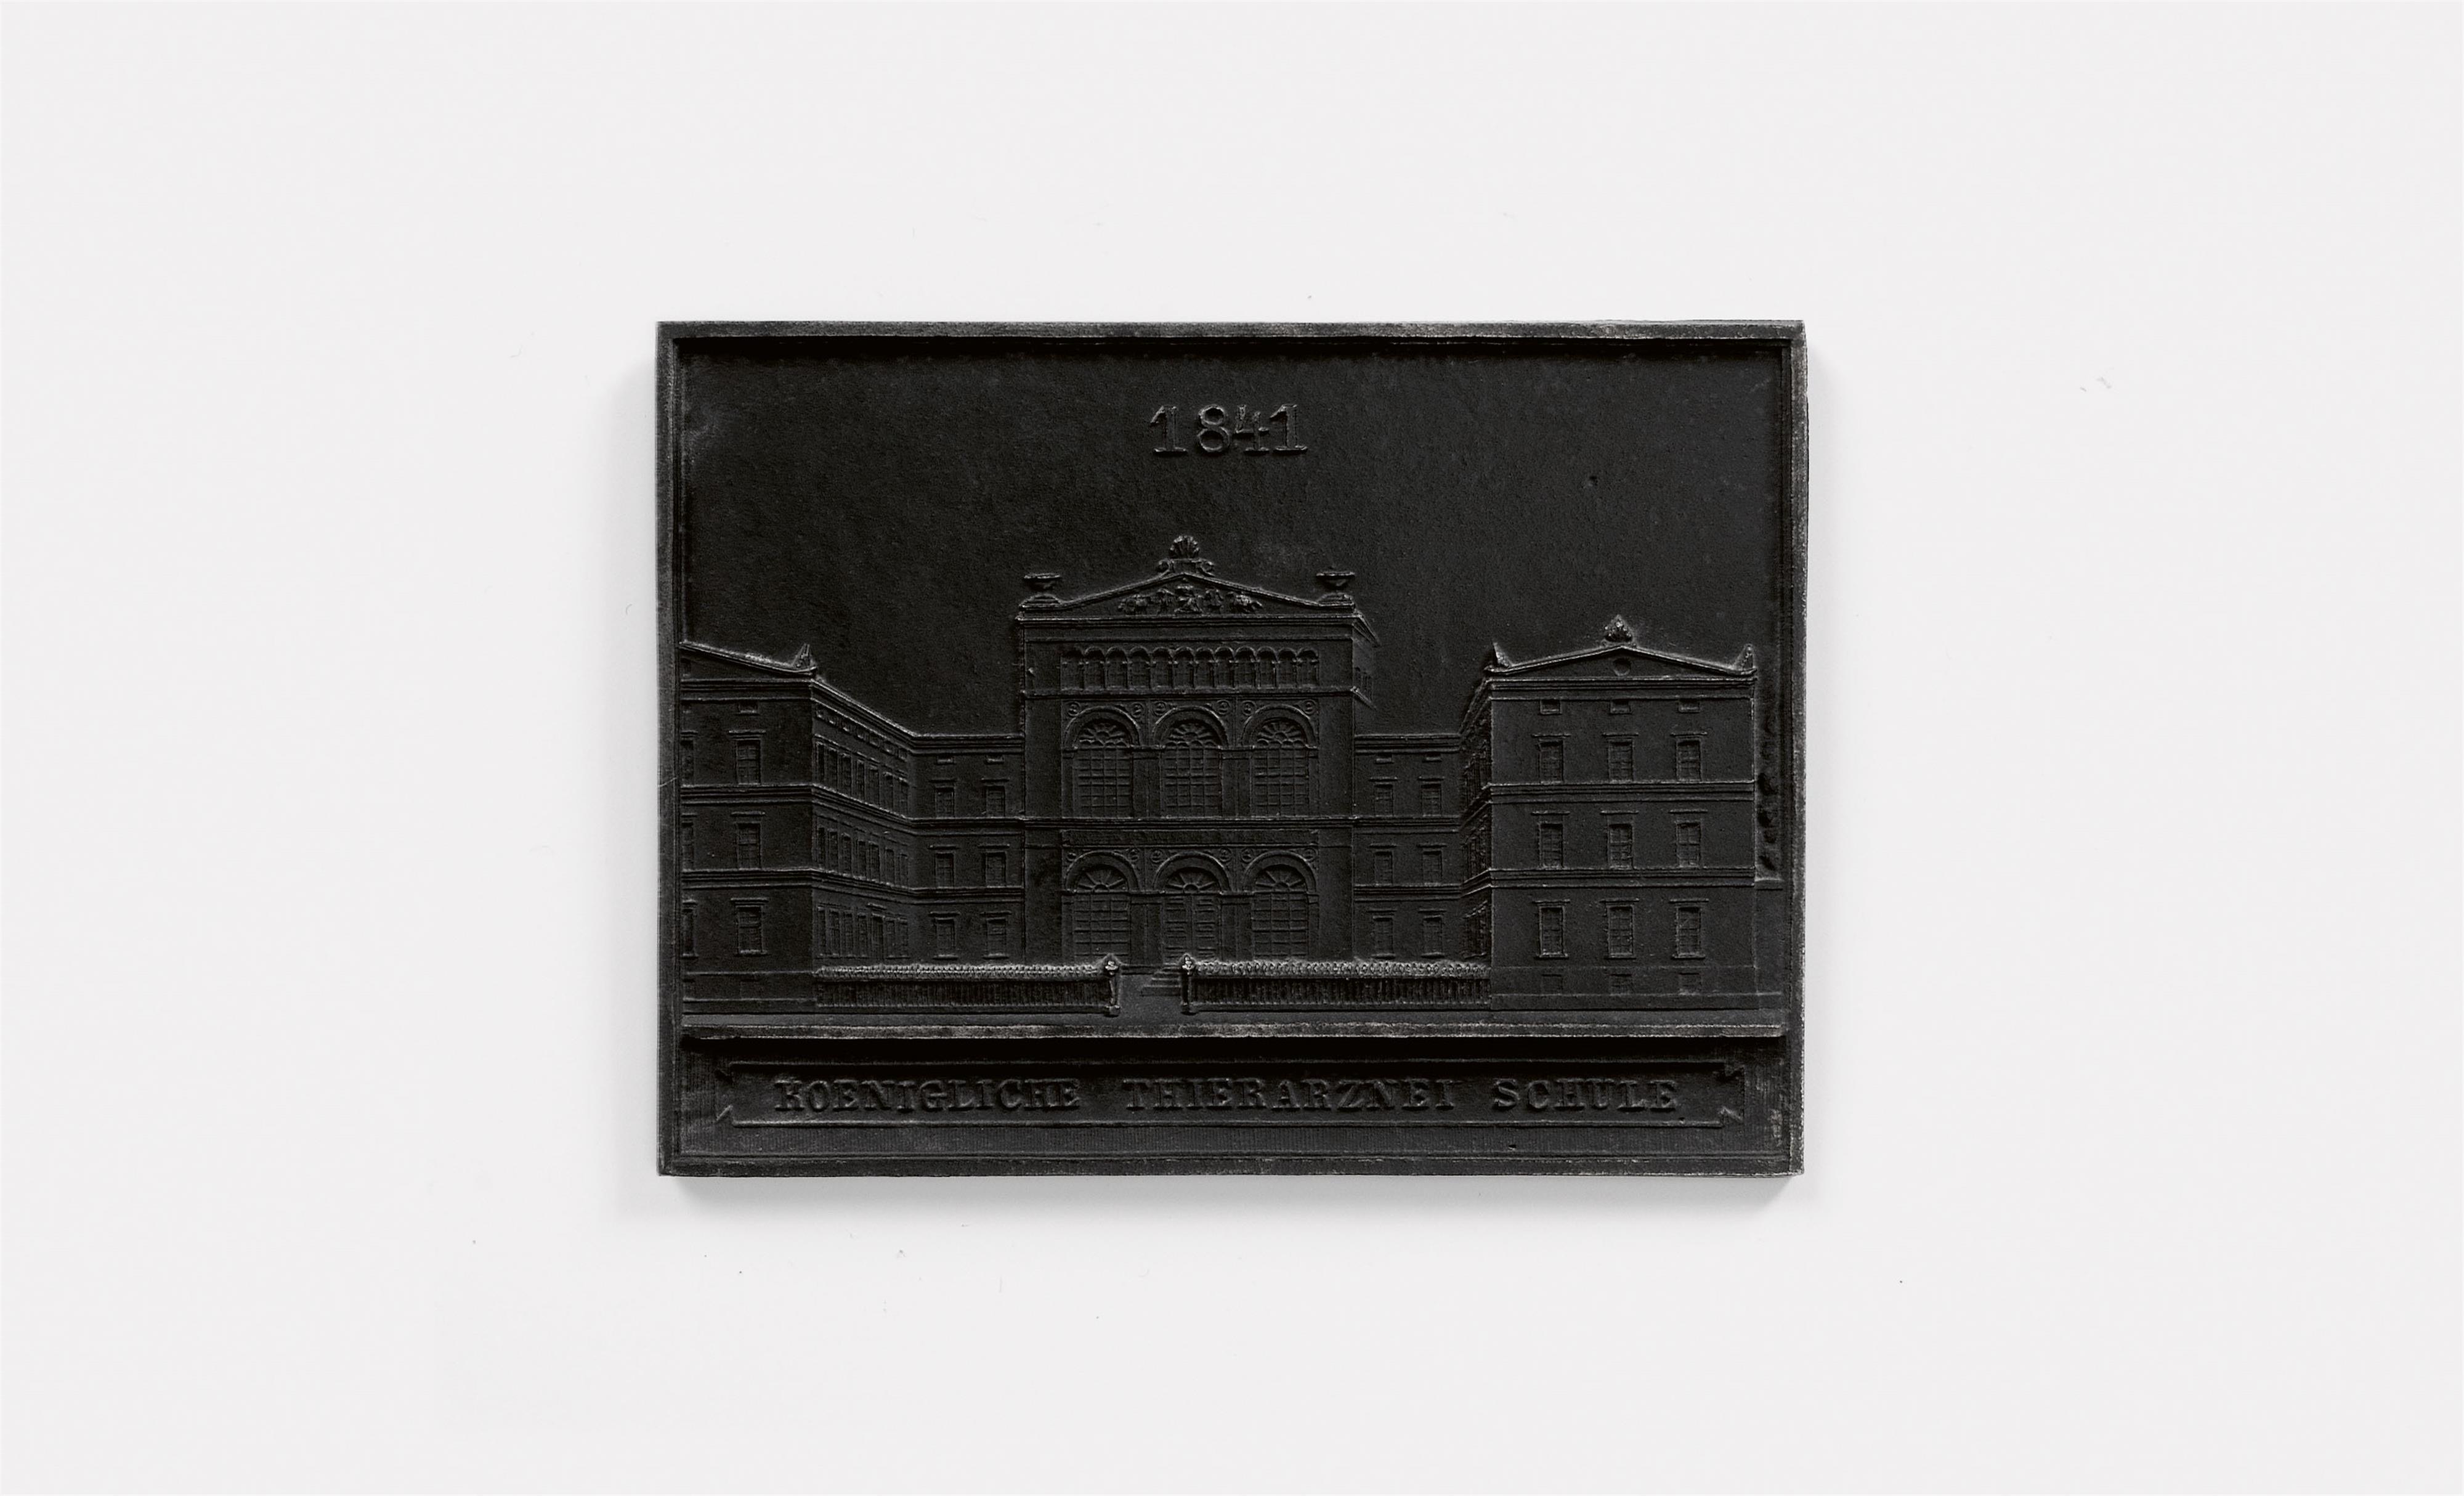 A cast iron New Year's plaque inscribed "1841 KOENIGLICHE TIERARZNEI SCHULE" - image-1